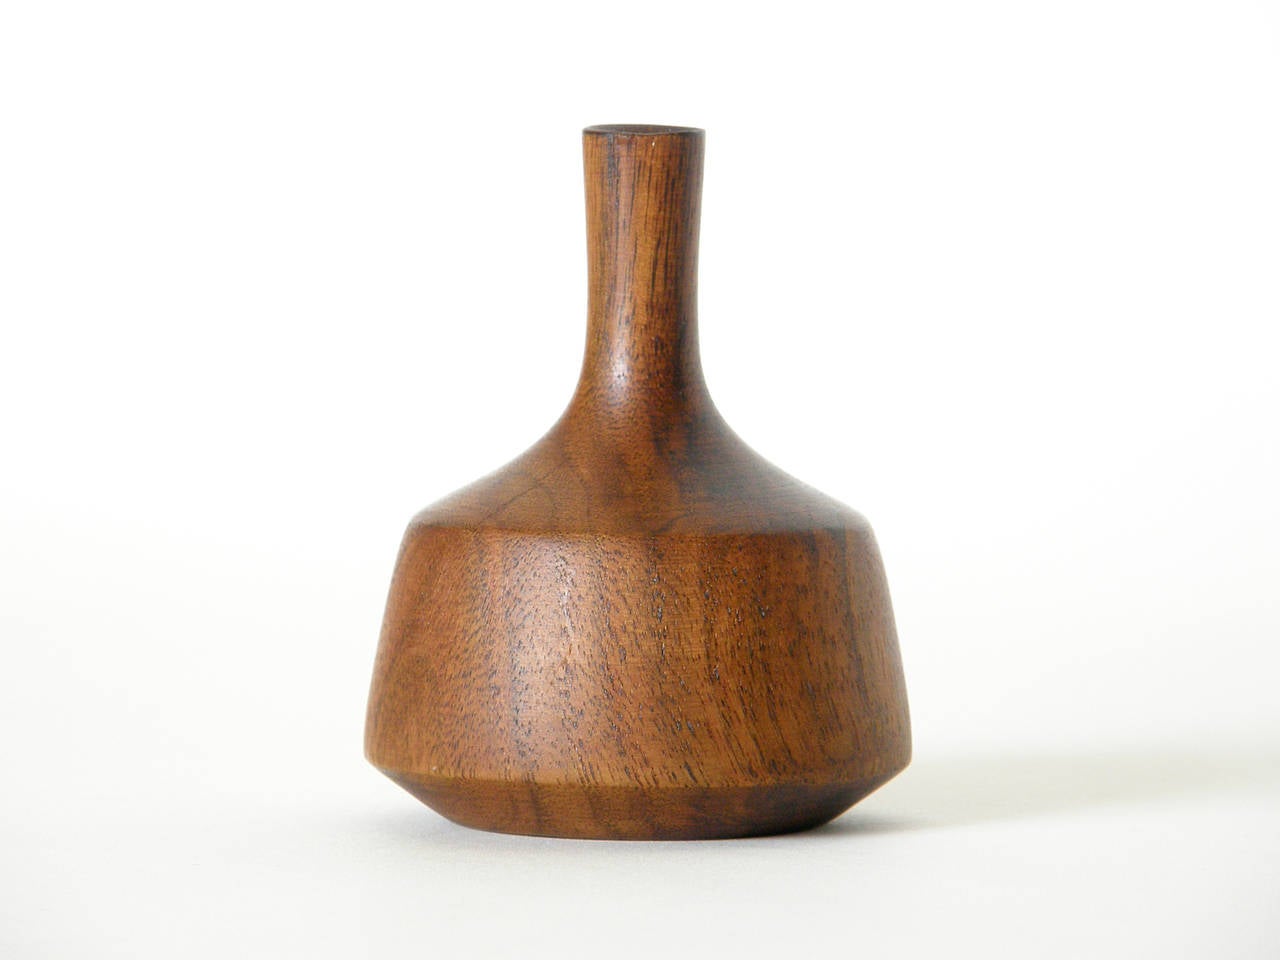 Turned walnut miniature vase or 